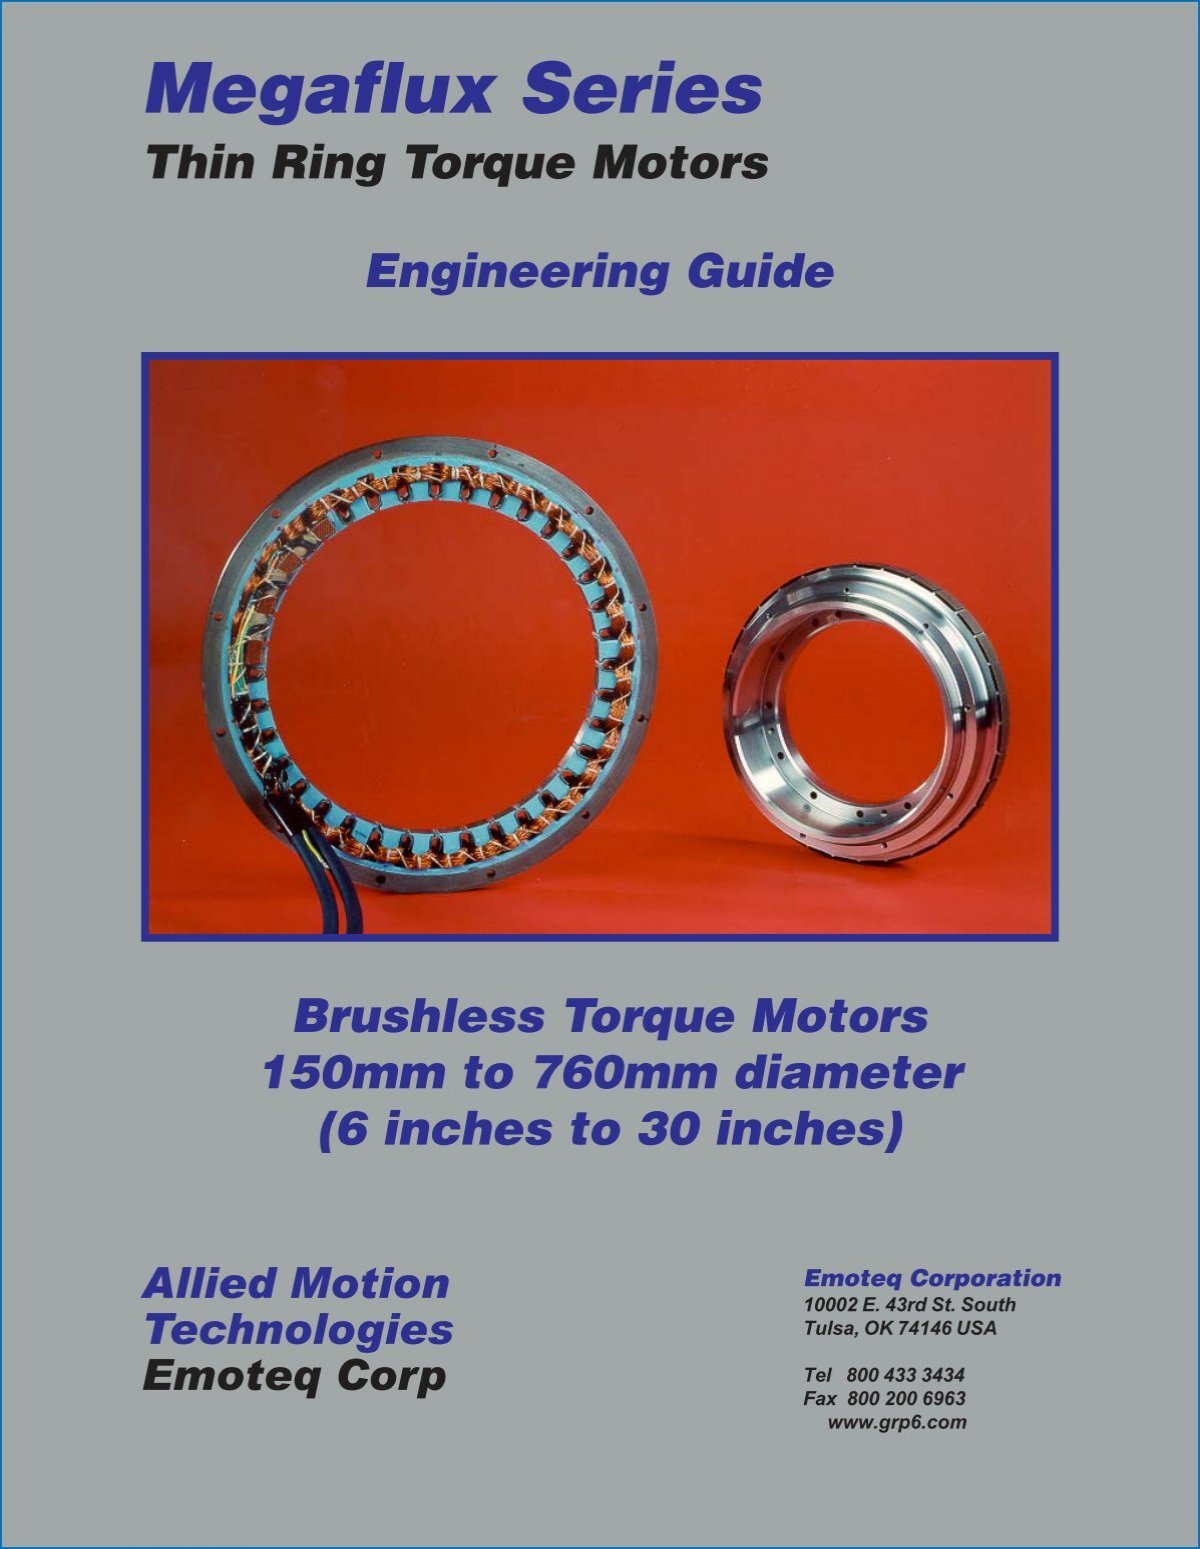 Megaflux Series Thin Ring Torque Motors - Grp6.com